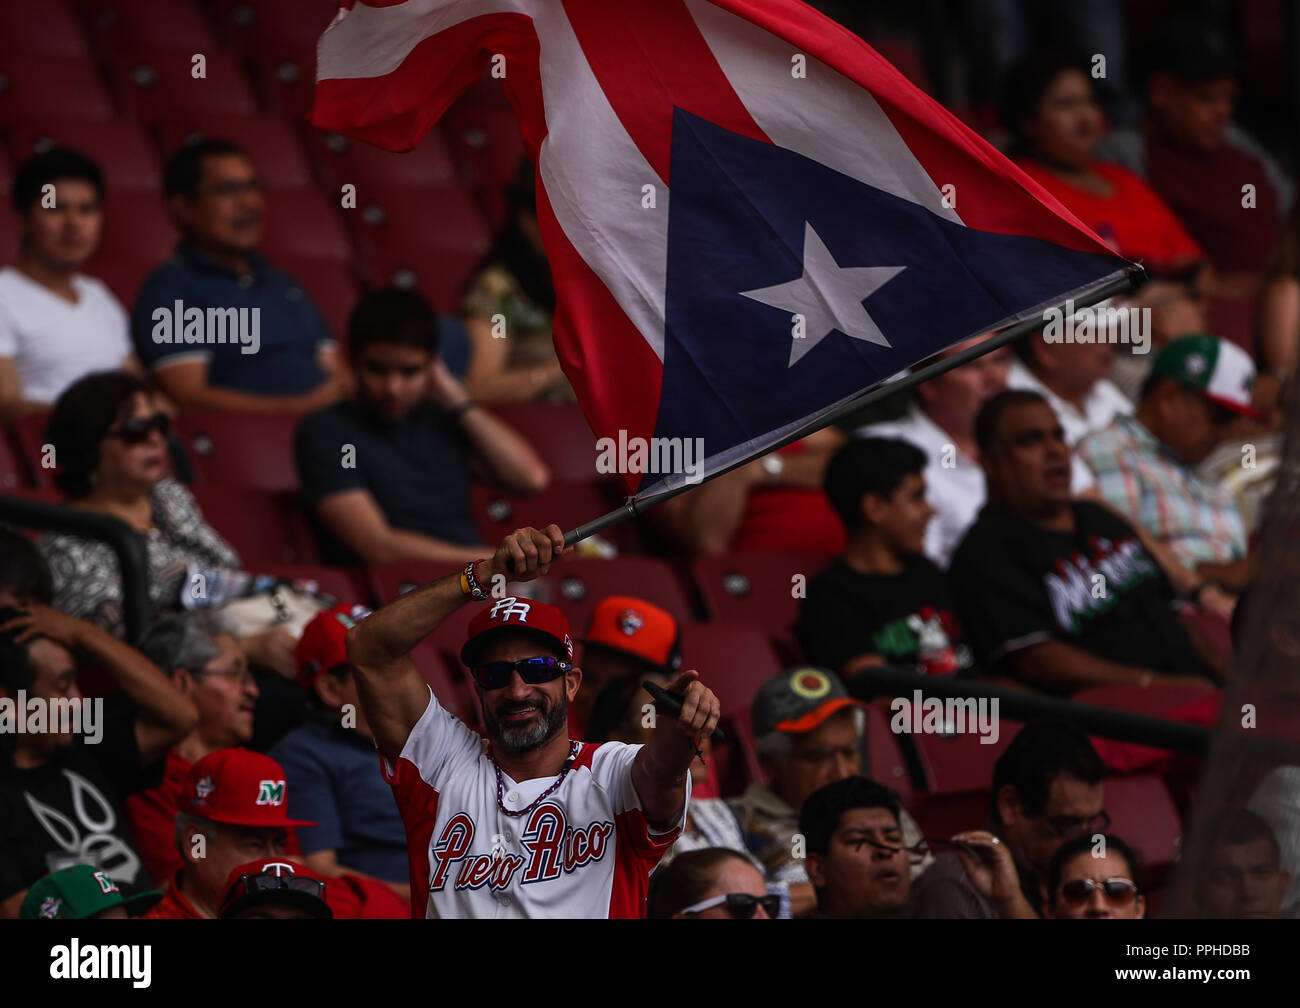 Aficion de Puerto Rico , durante el partido de beisbol de la Serie del Caribe entre Republica Dominicana vs Puerto Rico en el Nuevo Estadio de los To Stock Photo